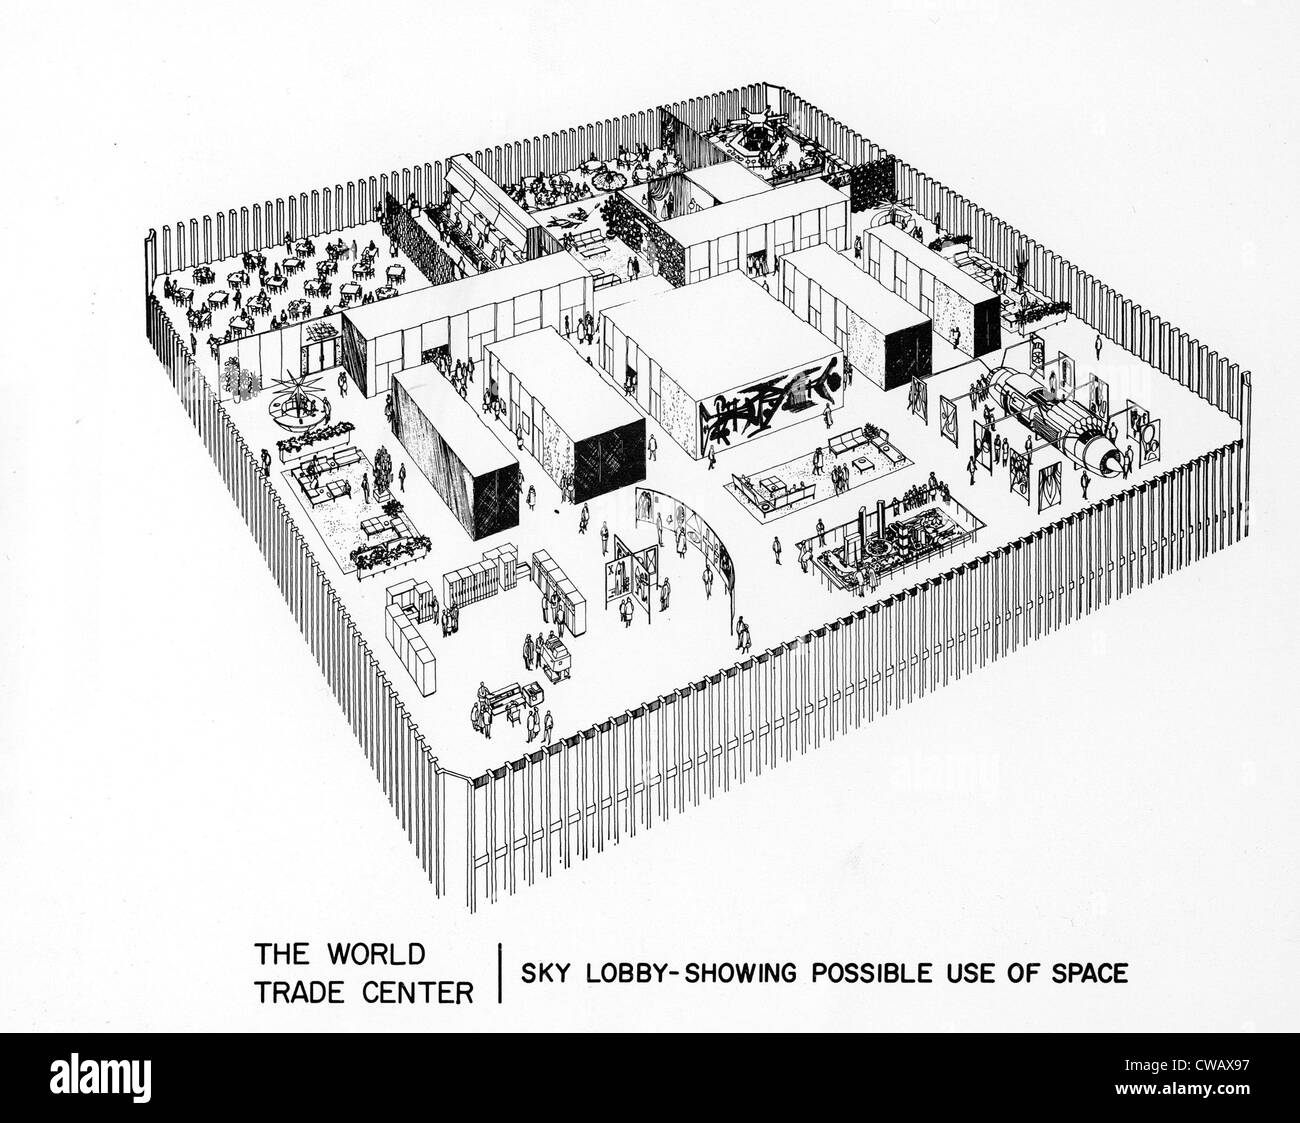 WORLD TRADE CENTER, schema di uso proposto di sky lobby spazio, datata 04-08-67.. La cortesia: CSU Archivi / Everett Collection Foto Stock